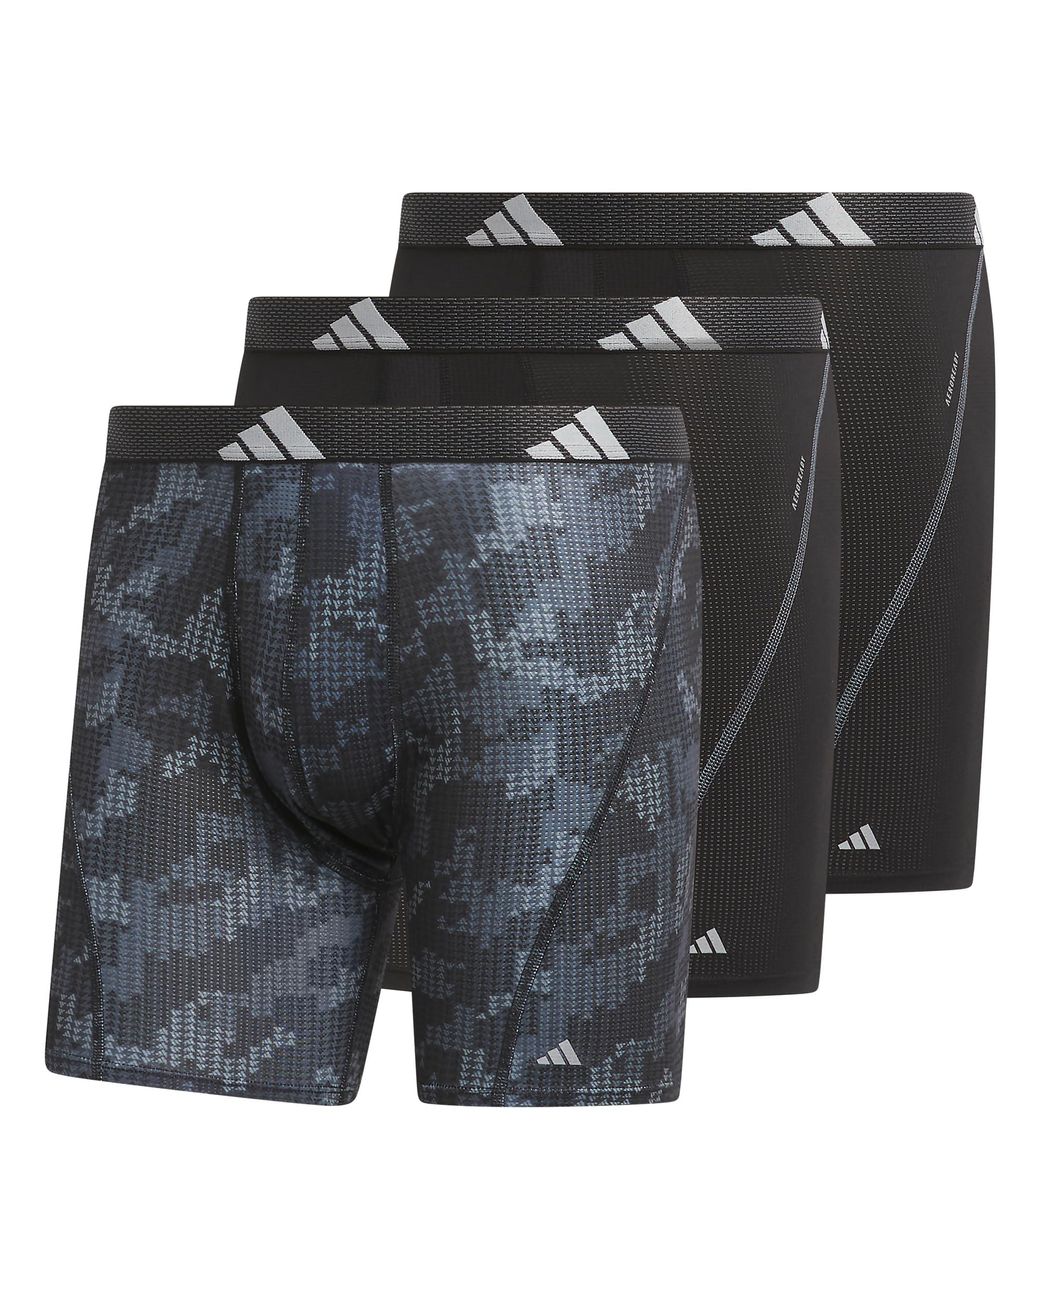 adidas Performance Mesh Boxer Brief Underwear in Black for Men